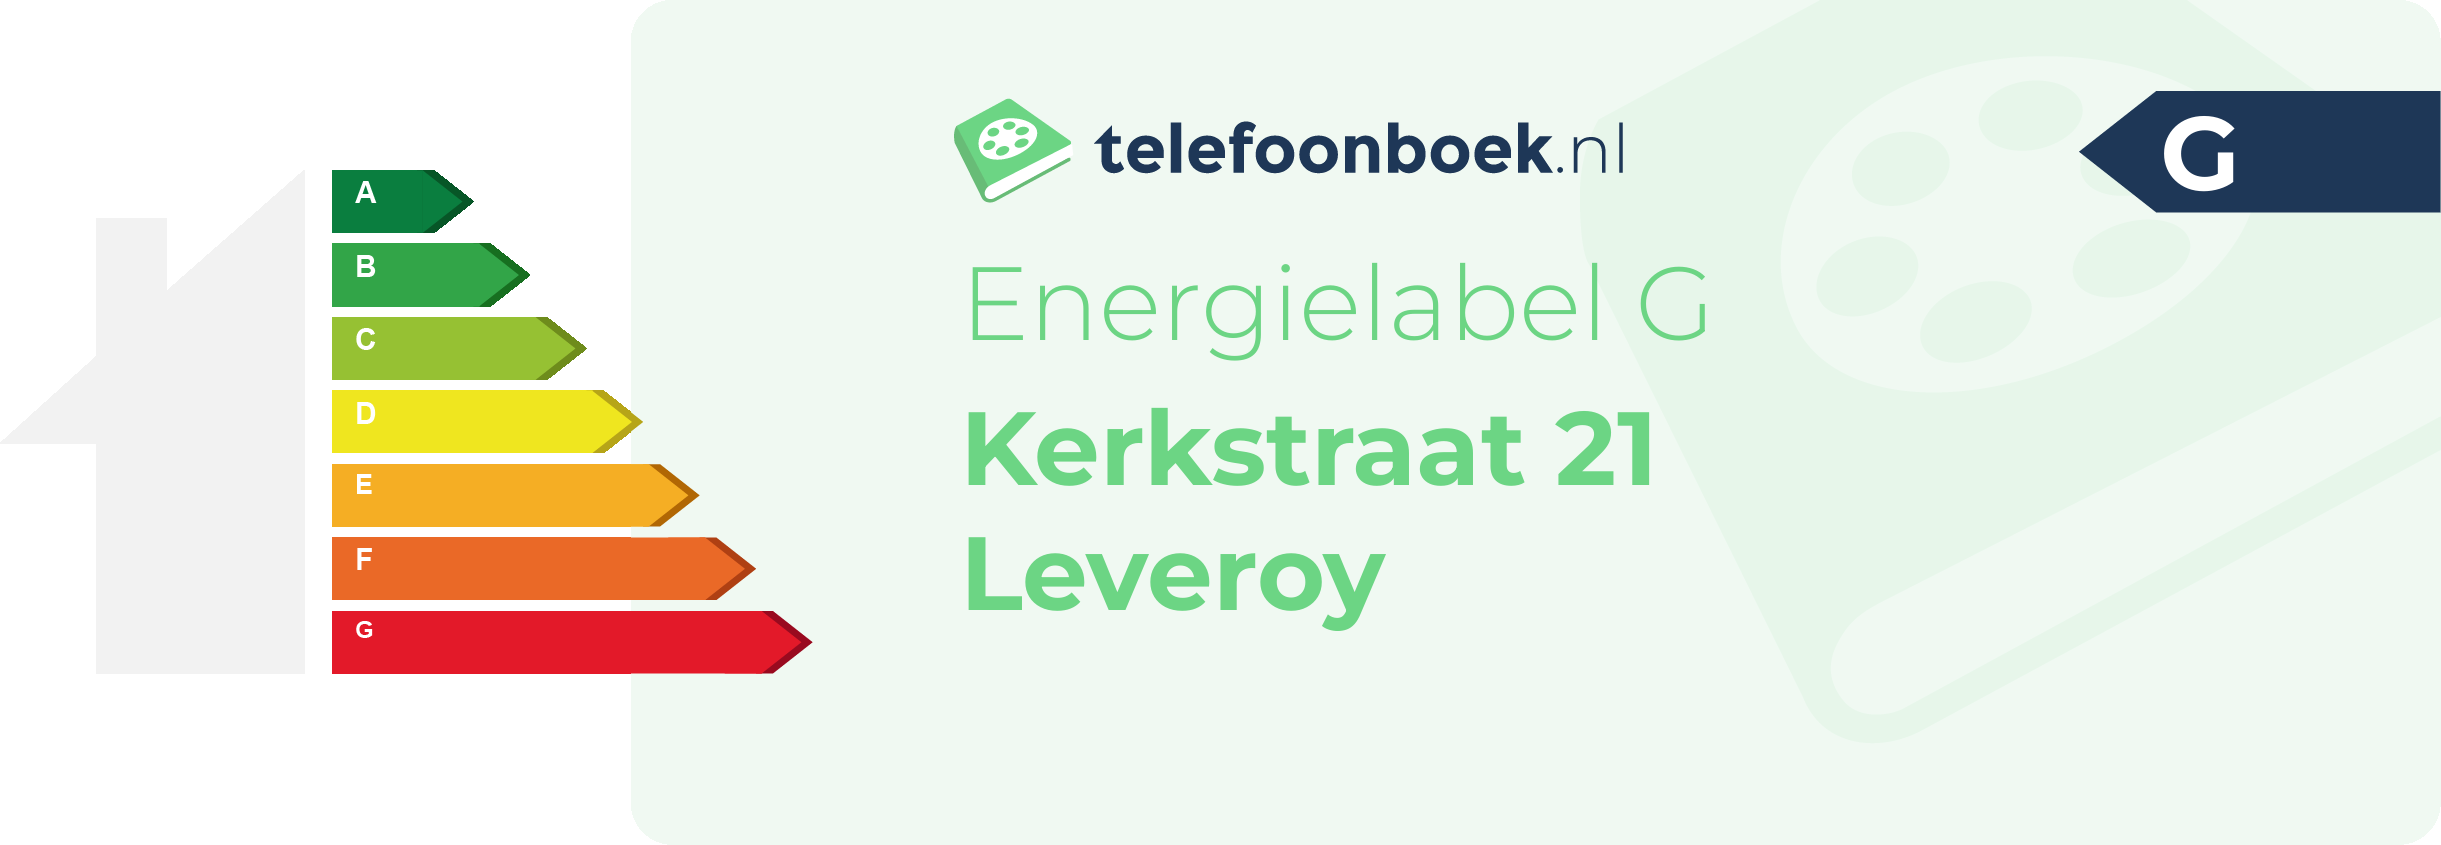 Energielabel Kerkstraat 21 Leveroy